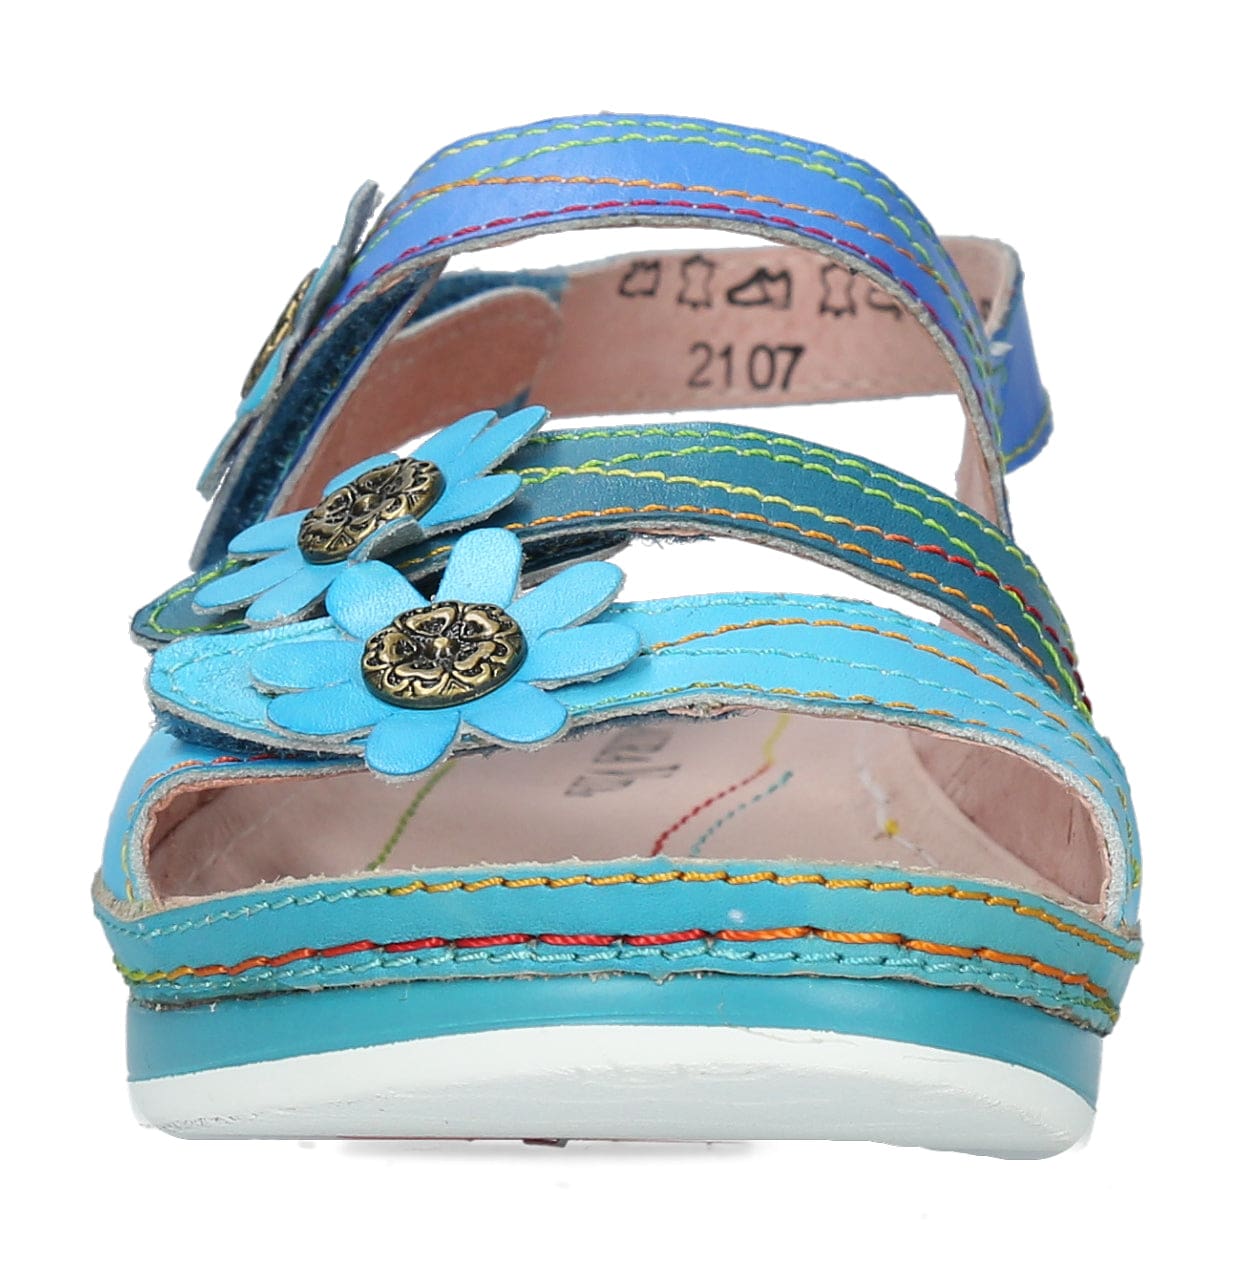 BRCUELO 201 Scarpe - Sandalo